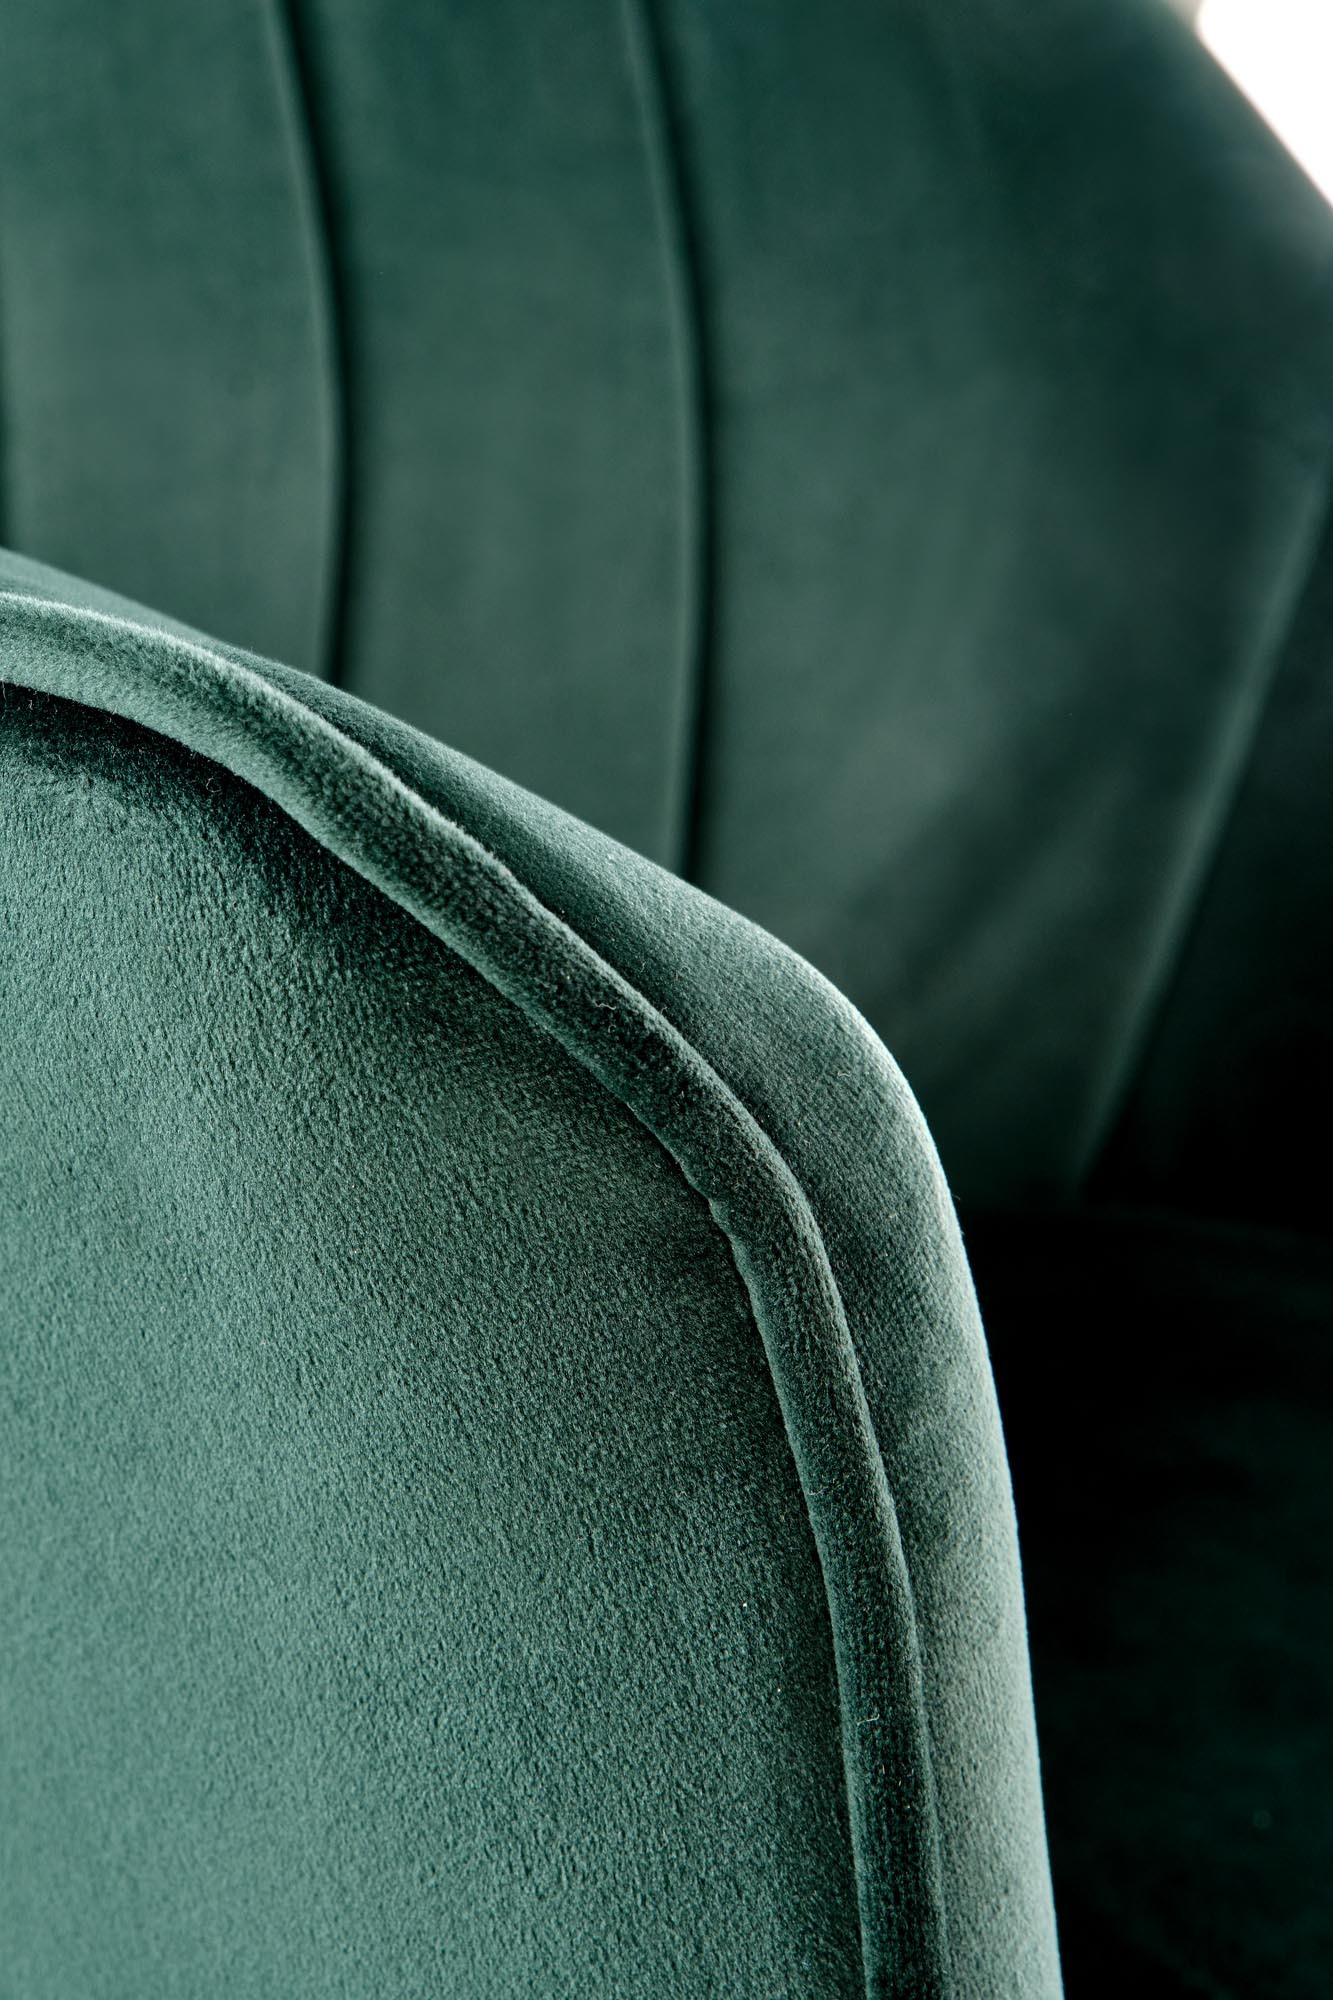 K468 krzesło ciemny zielony